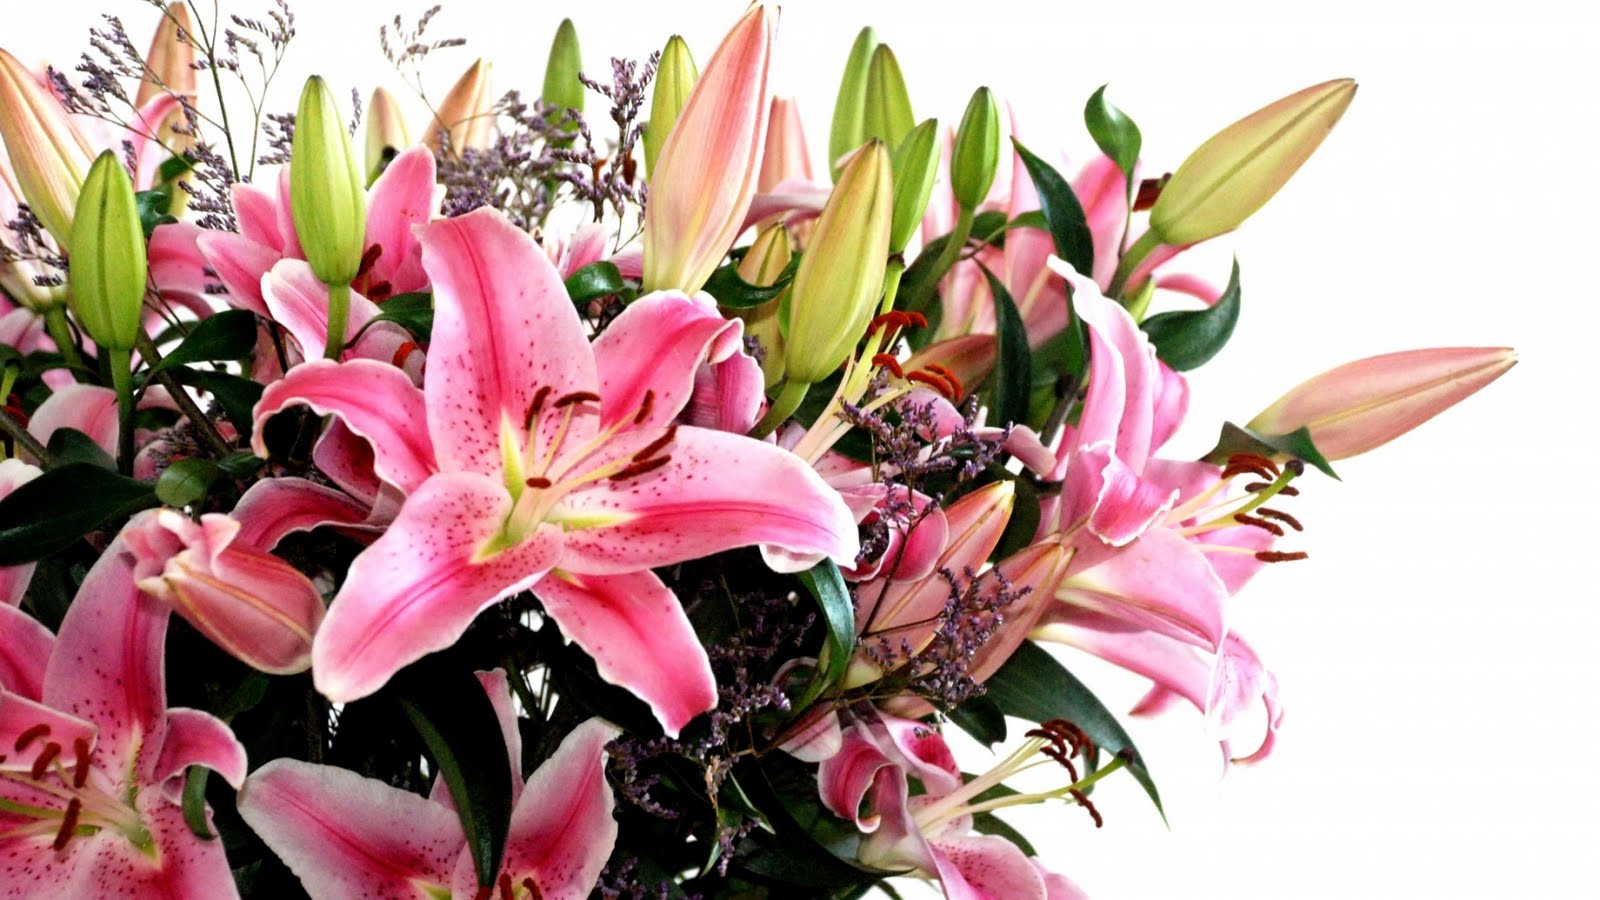 http://3.bp.blogspot.com/_u2tYu-uzSZY/TBJqLOS6L3I/AAAAAAAACCs/xPbRZGm4gEU/s1600/Valentines-Day-Flower-Bouquet-Wallpapers.jpg